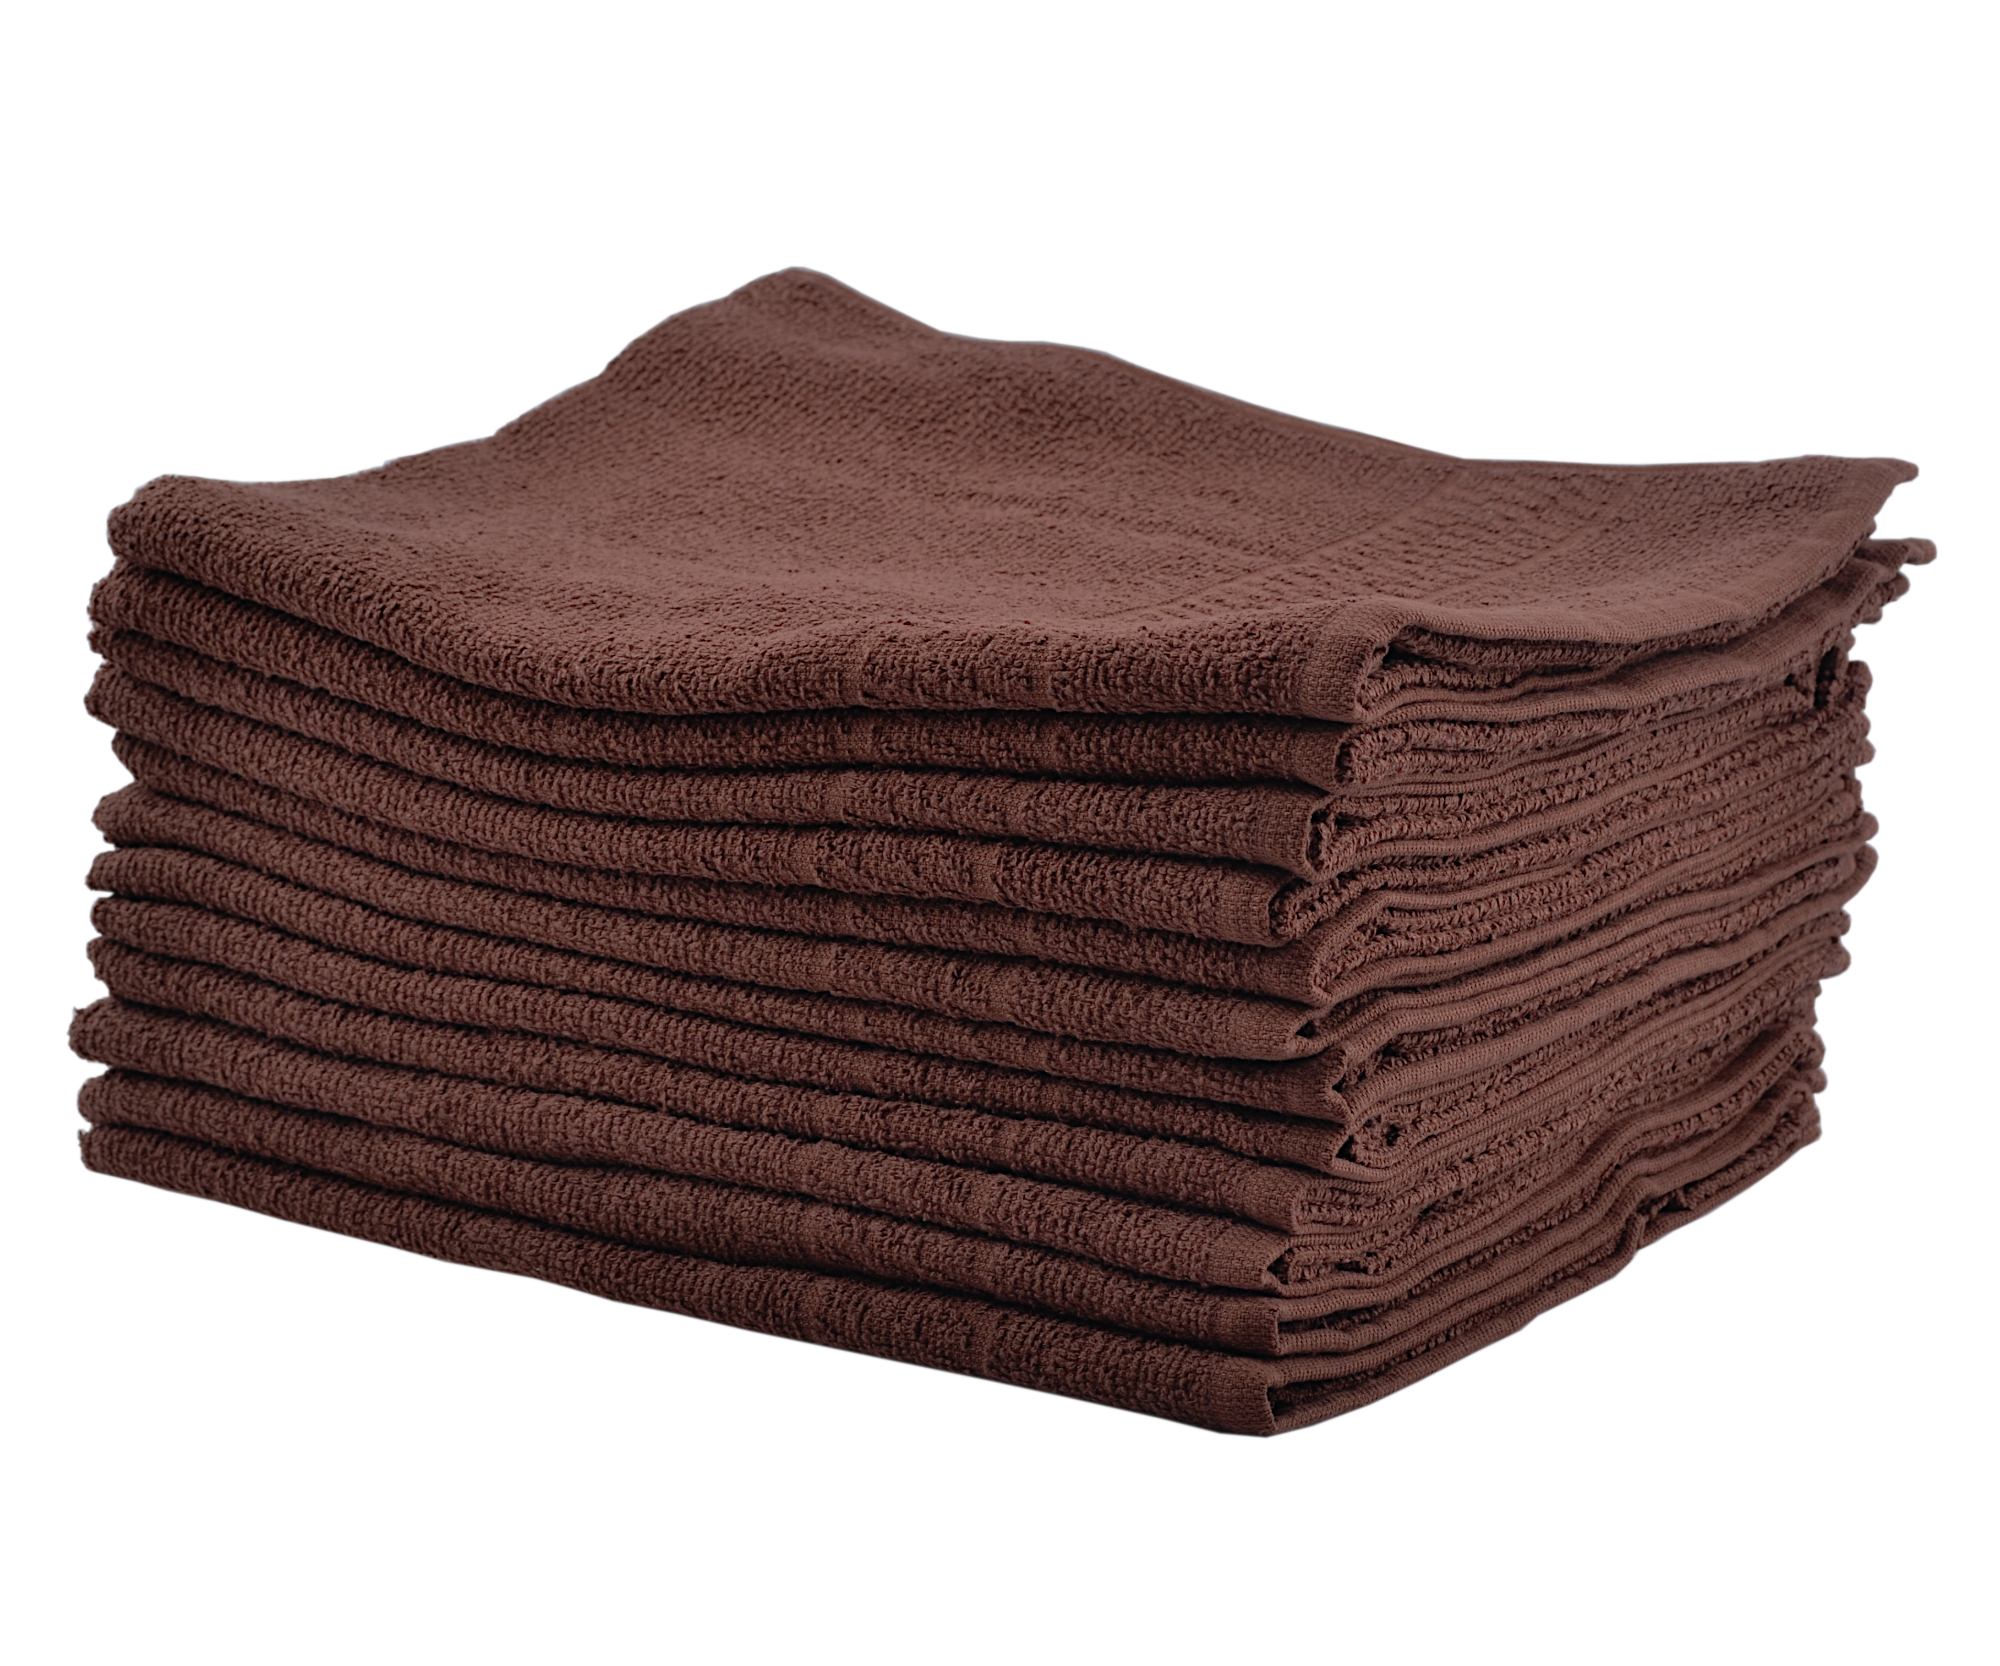 Bavlněné ručníky Sibel Bob Tuo - 50 x 85 cm - 12 ks, hnědé (3510300) + DÁREK ZDARMA